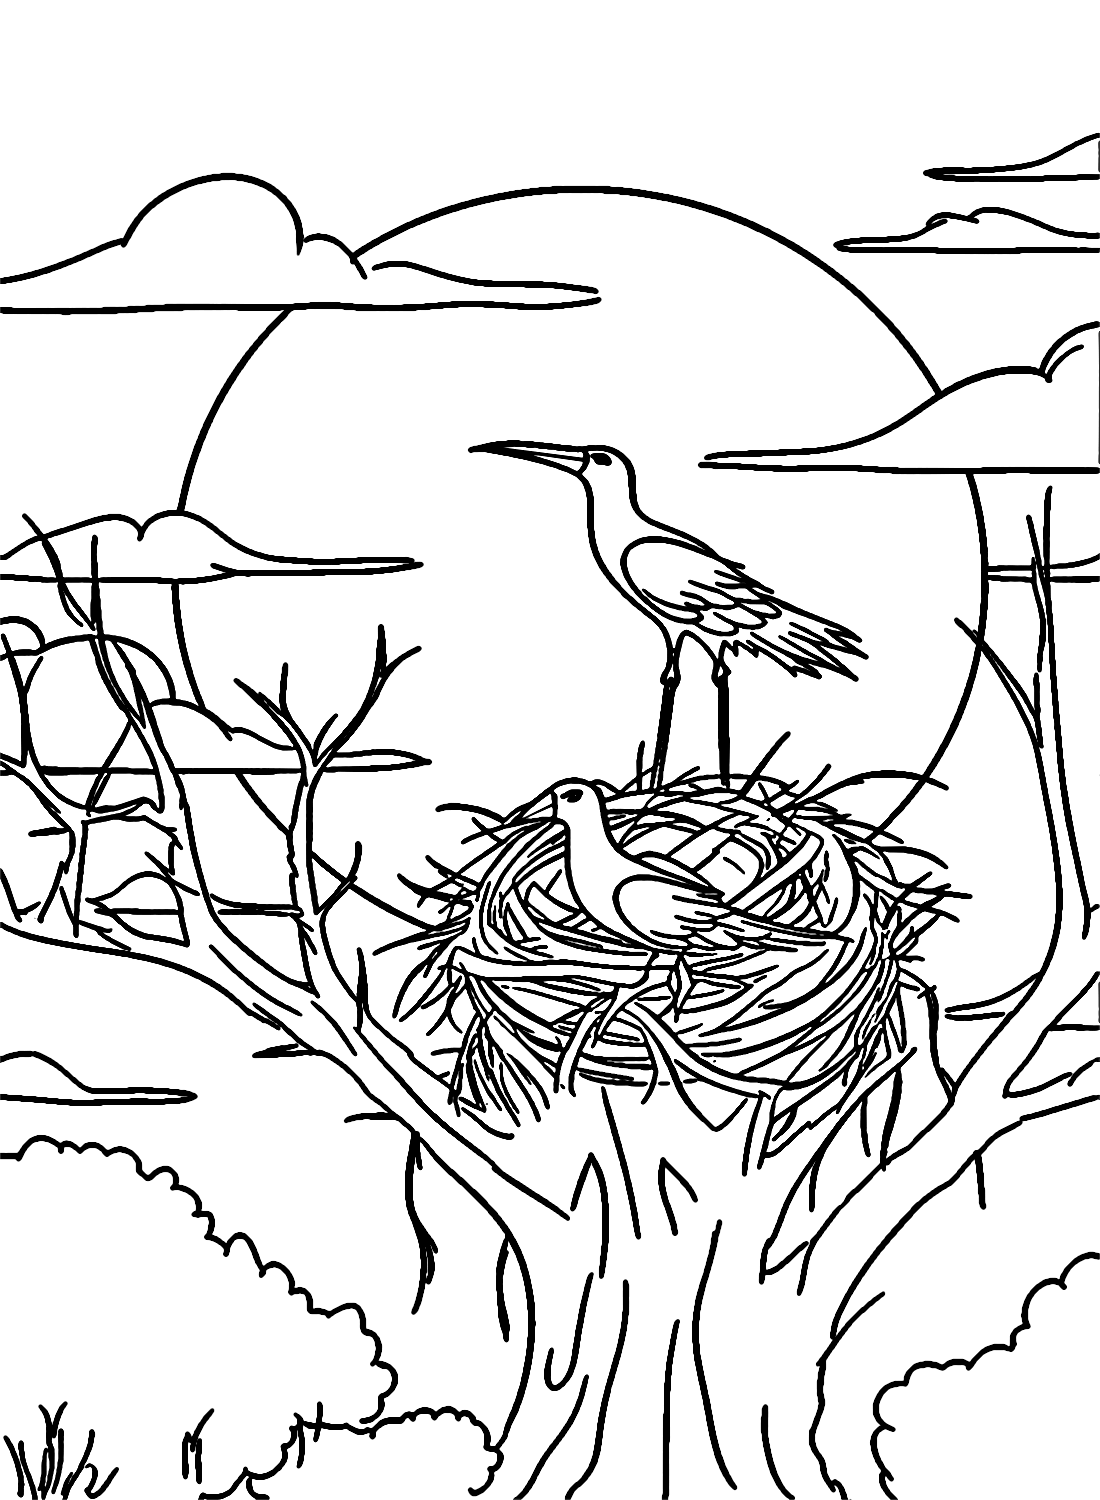 Störche nisten auf einem hohen Baum von Stork